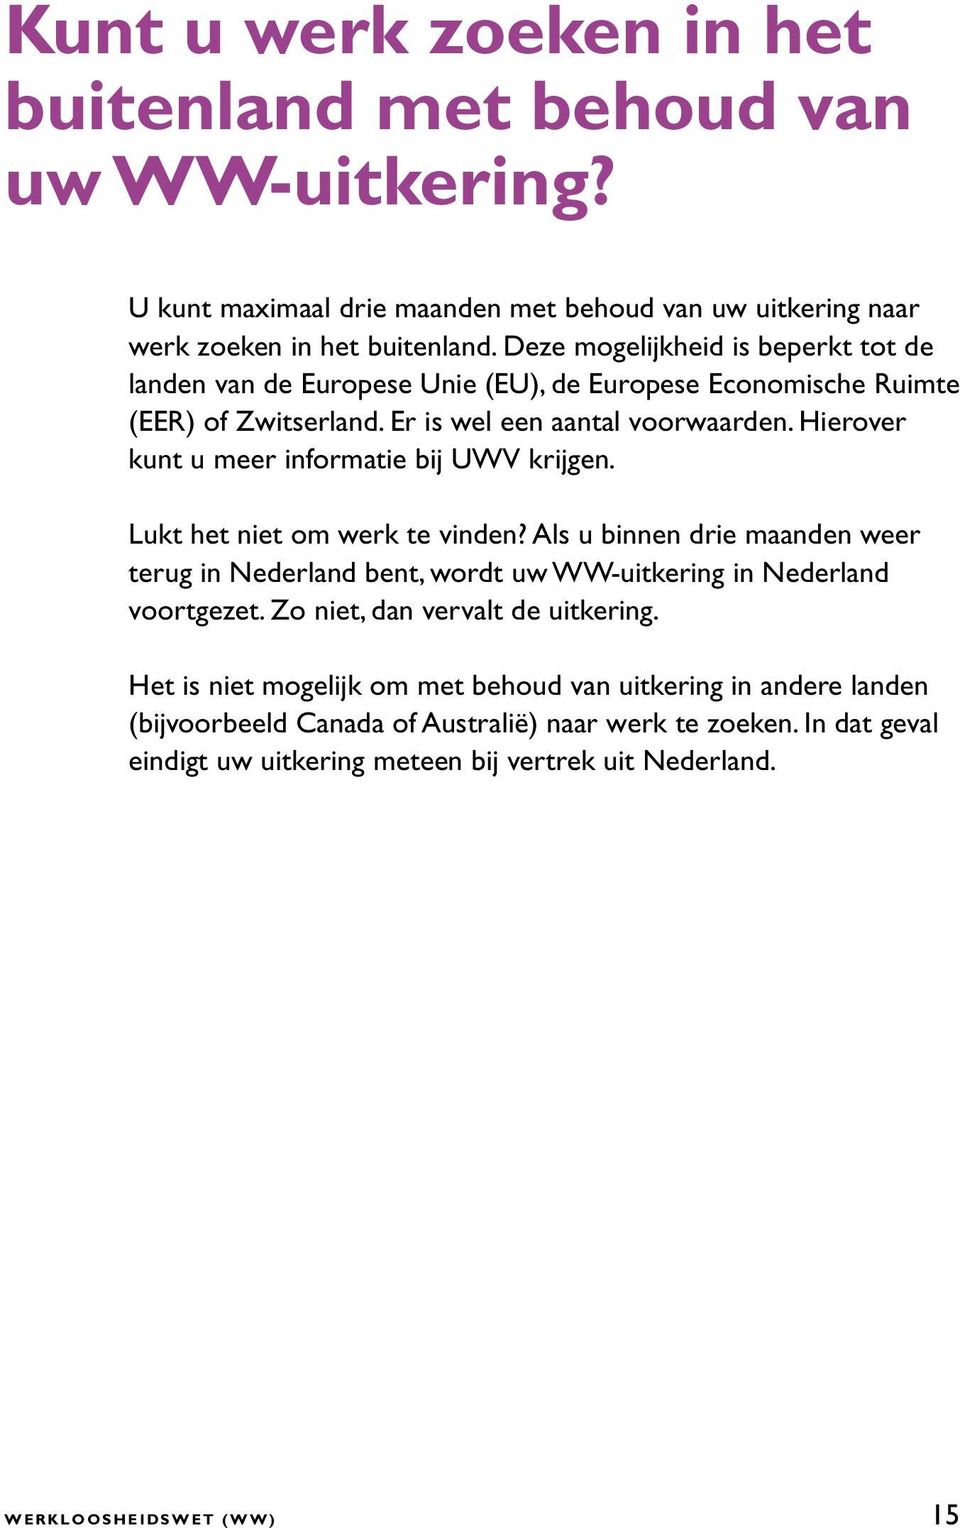 Hierover kunt u meer informatie bij UWV krijgen. Lukt het niet om werk te vinden? Als u binnen drie maanden weer terug in Nederland bent, wordt uw WW-uitkering in Nederland voortgezet.